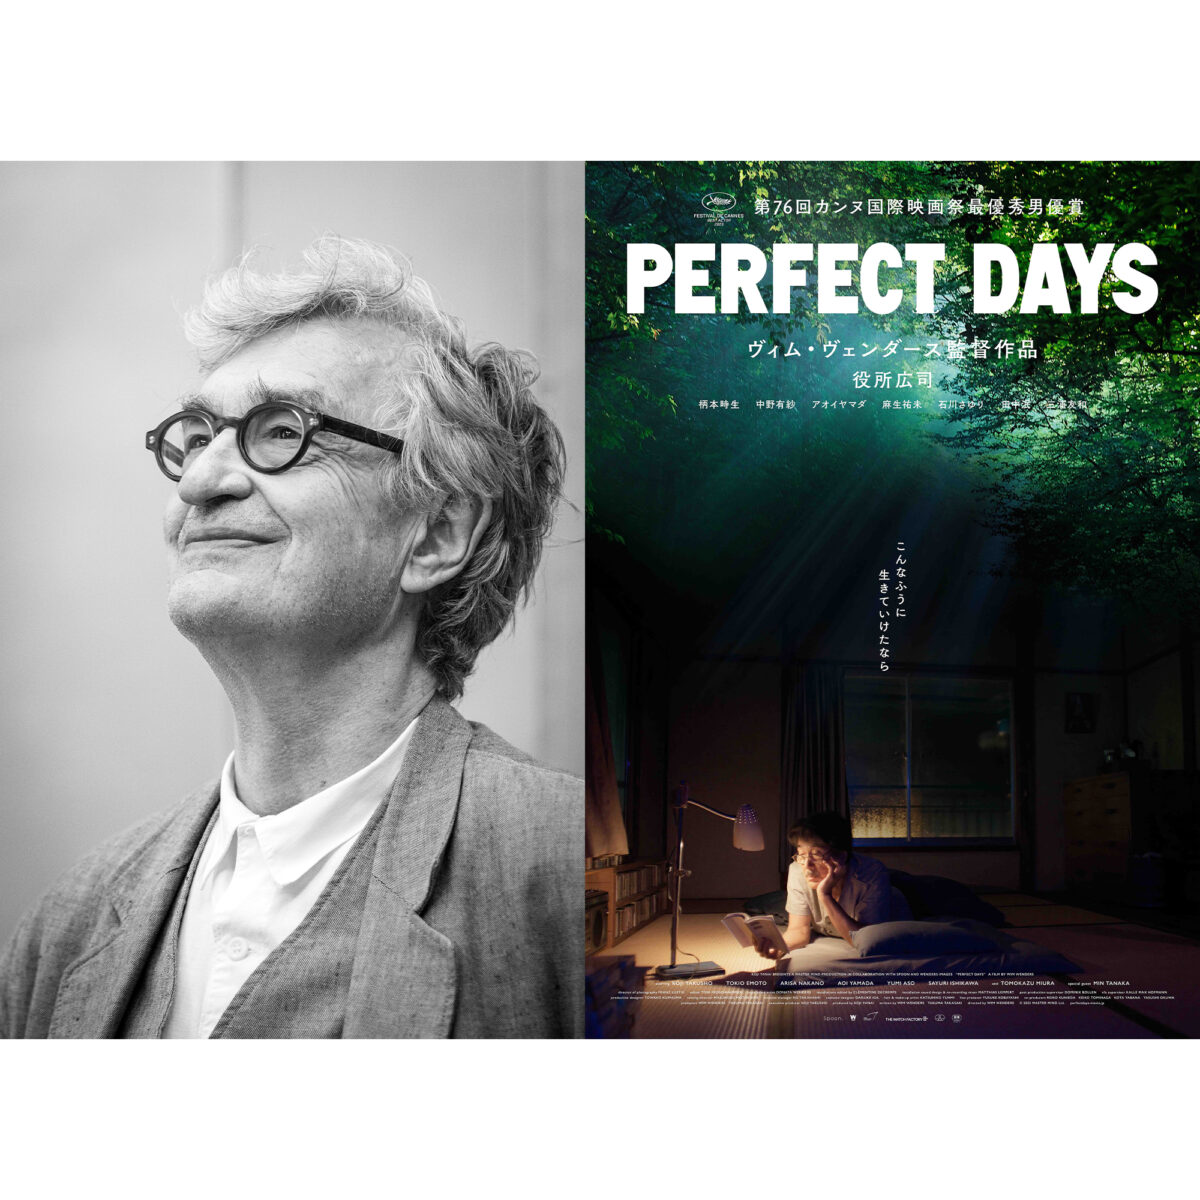 ヴィム・ヴェンダース監督が新作の映画『PERFECT DAYS』への思いを語る。Wim Wenders ...